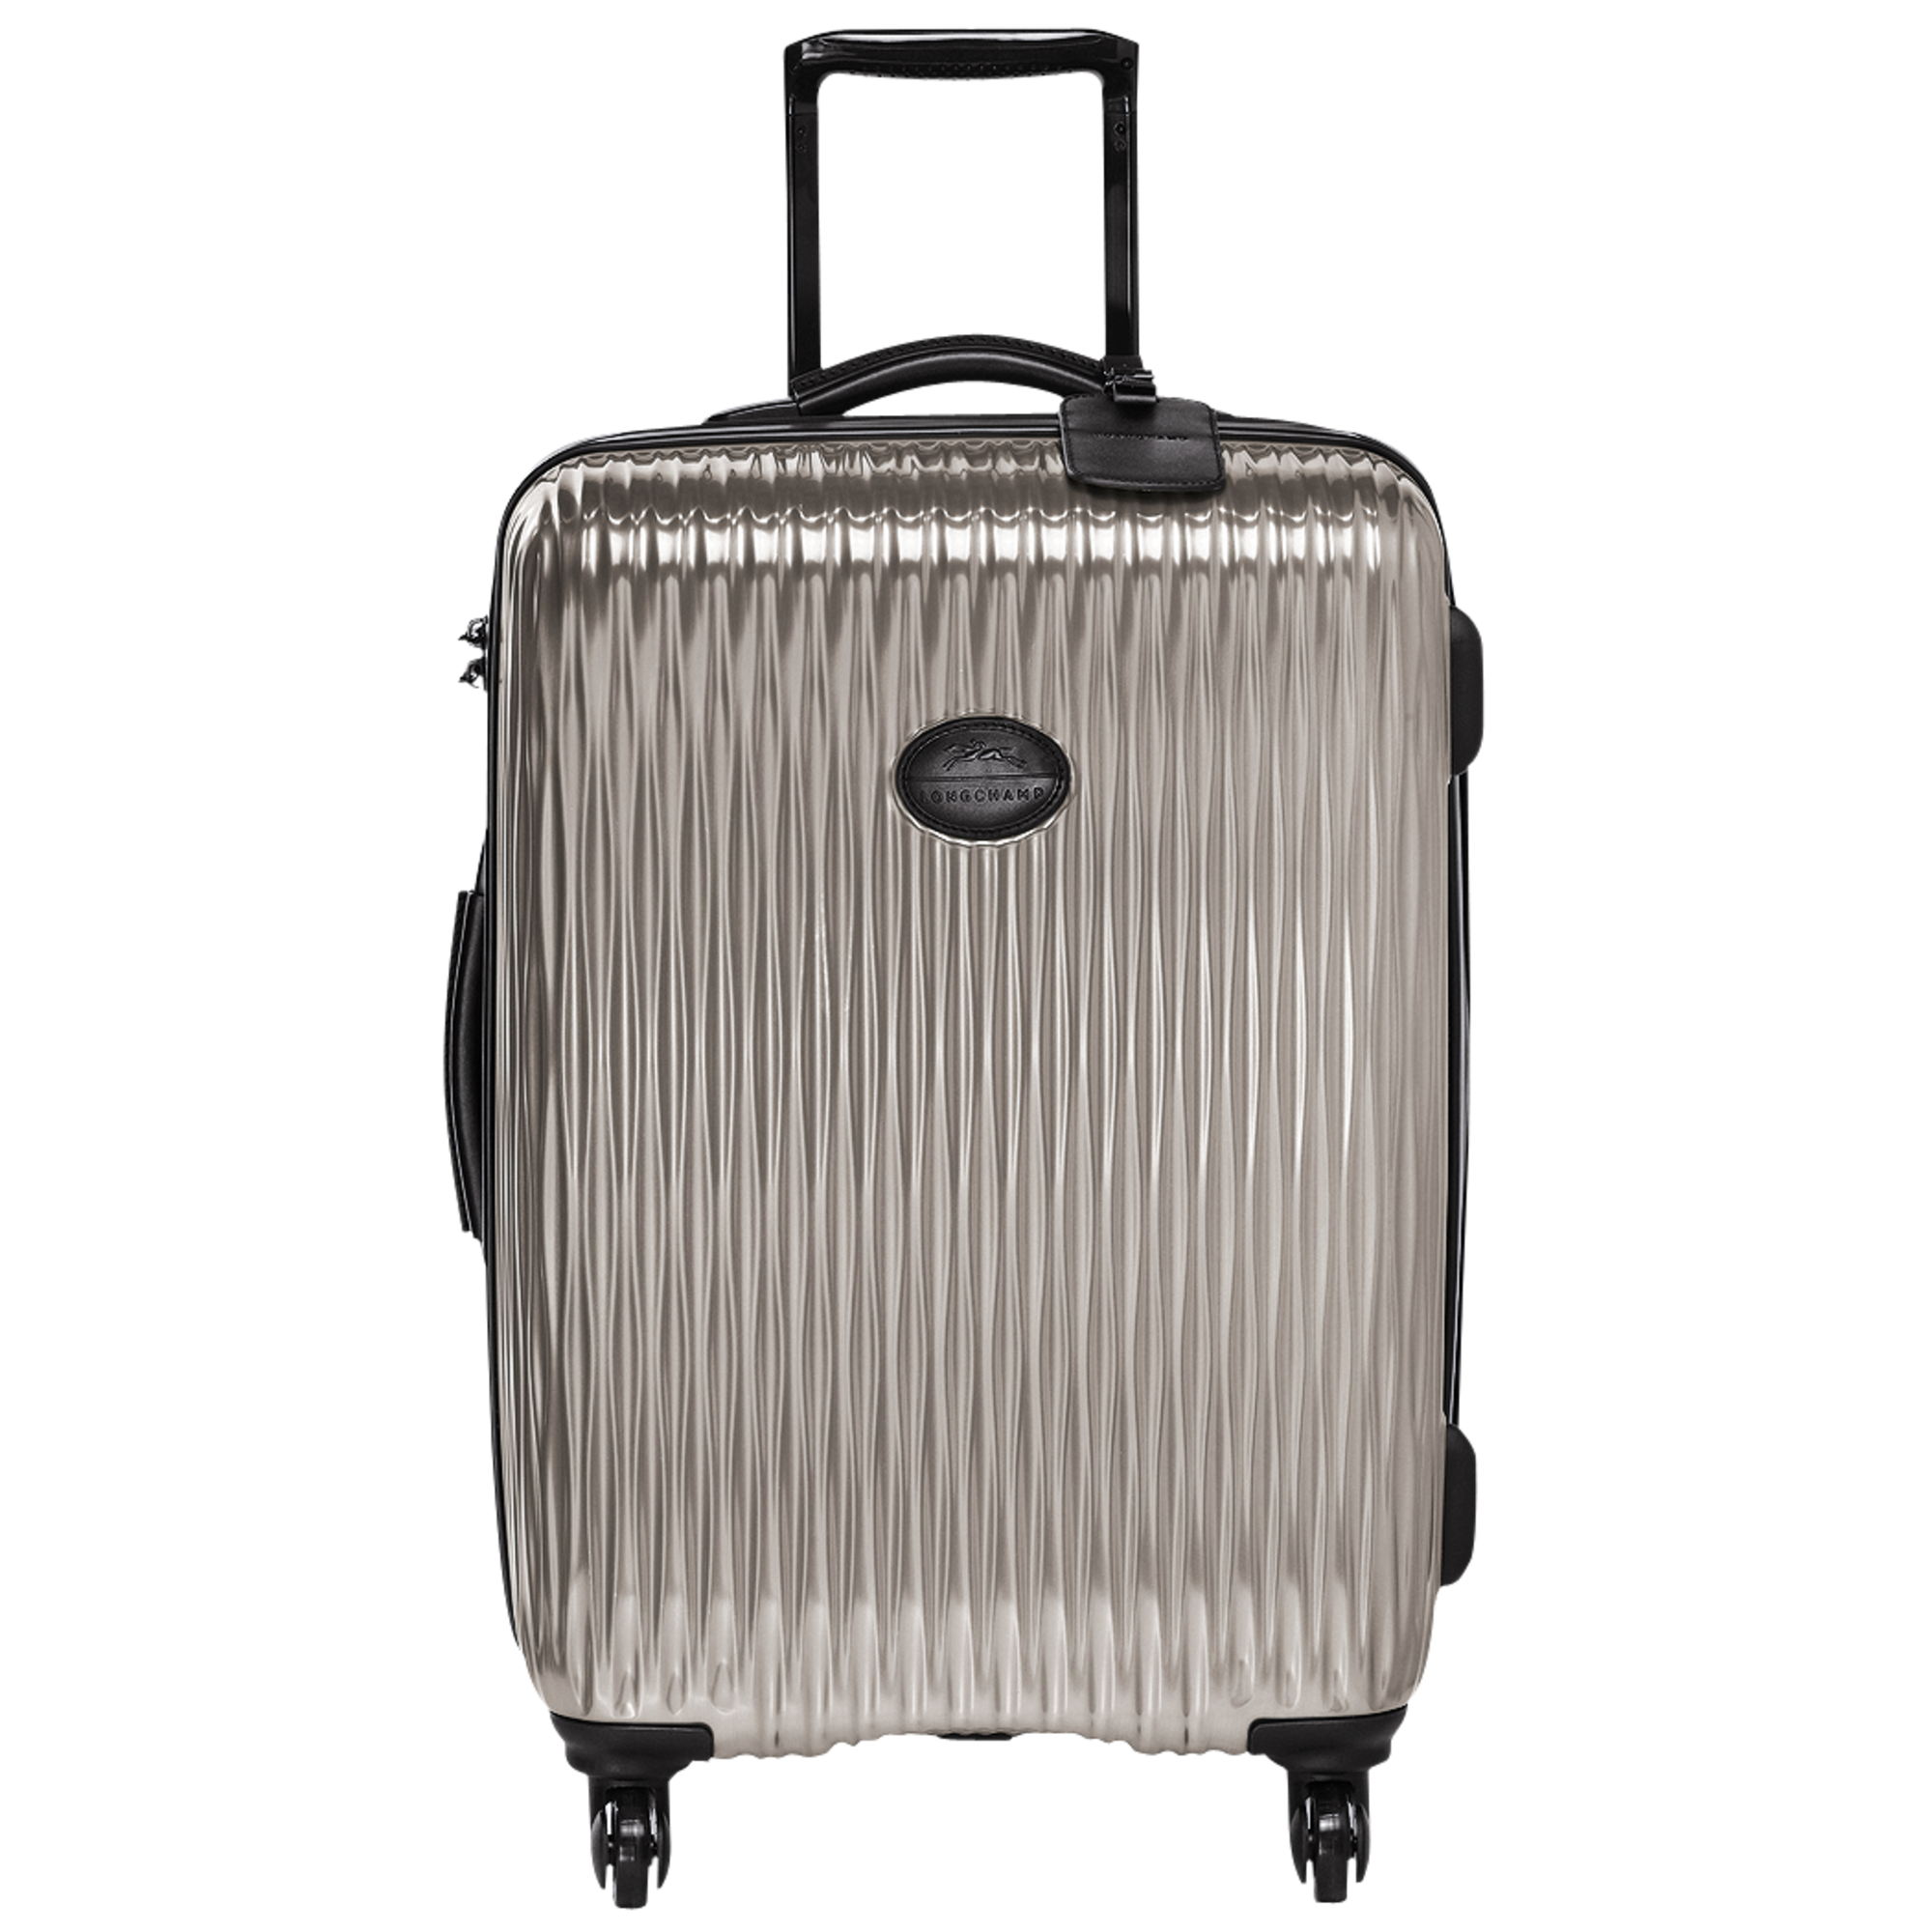 longchamp fairval suitcase